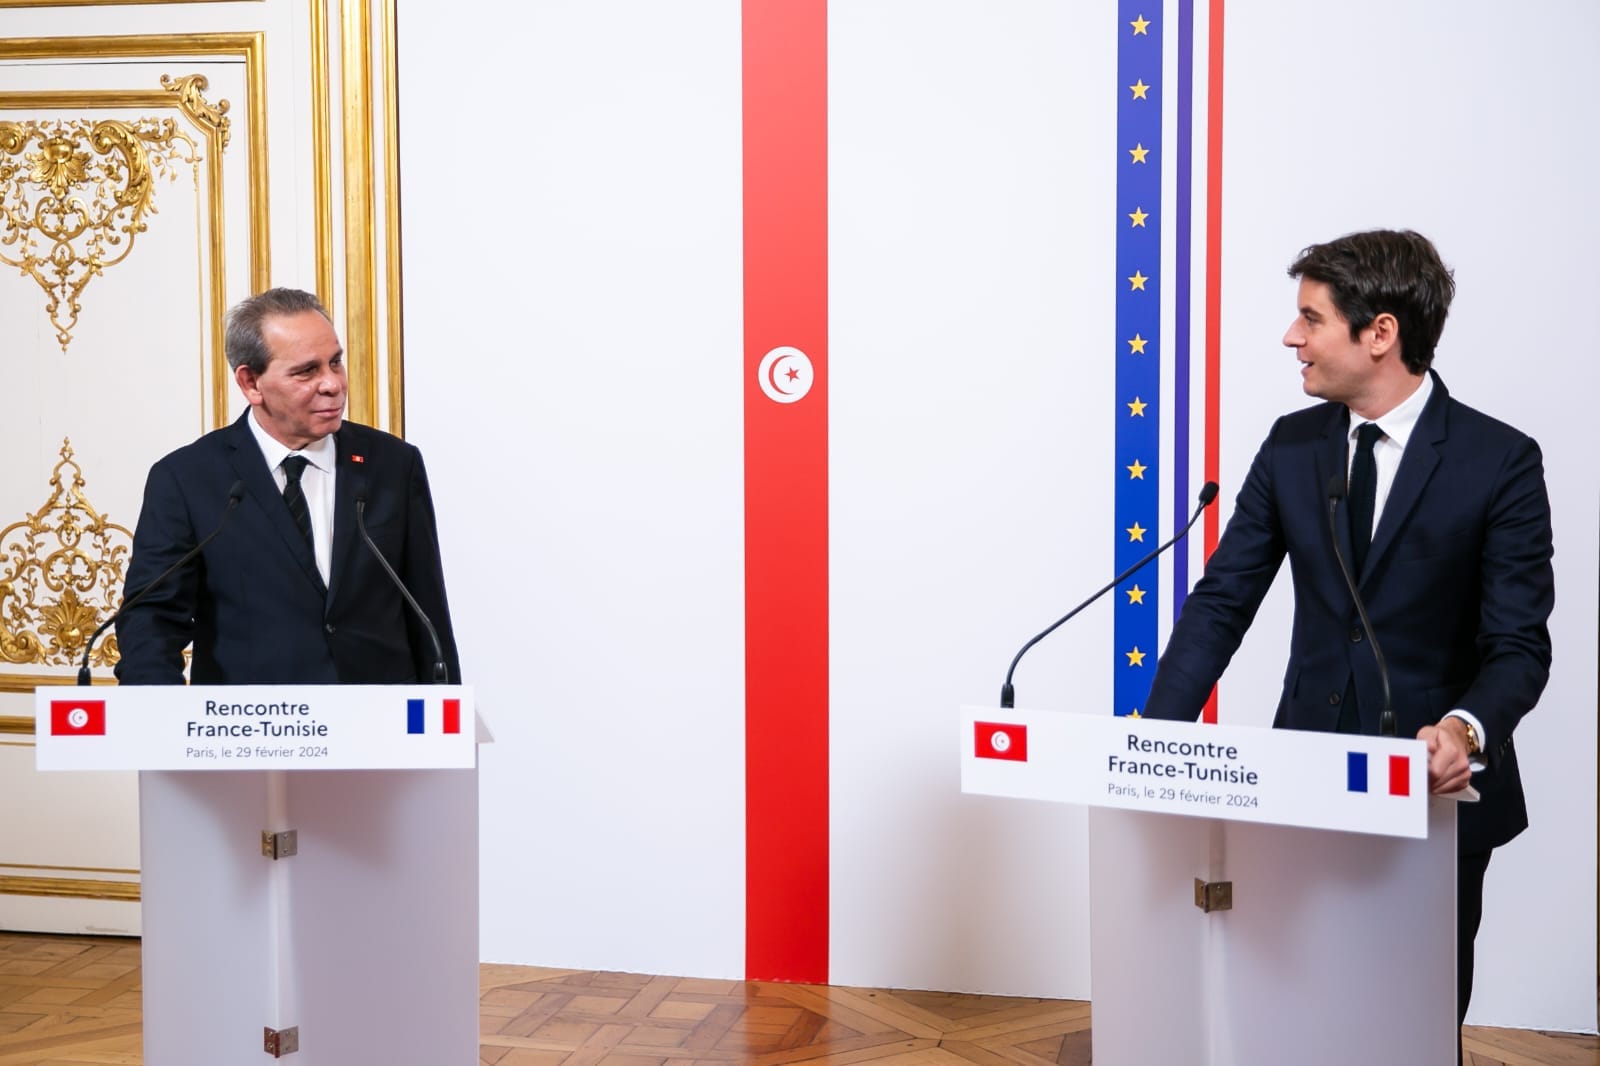  رئيس الحكومة يطلع الوزير الأول الفرنسي على التقدم الذي أحرزته تونس في مختلف المجالات